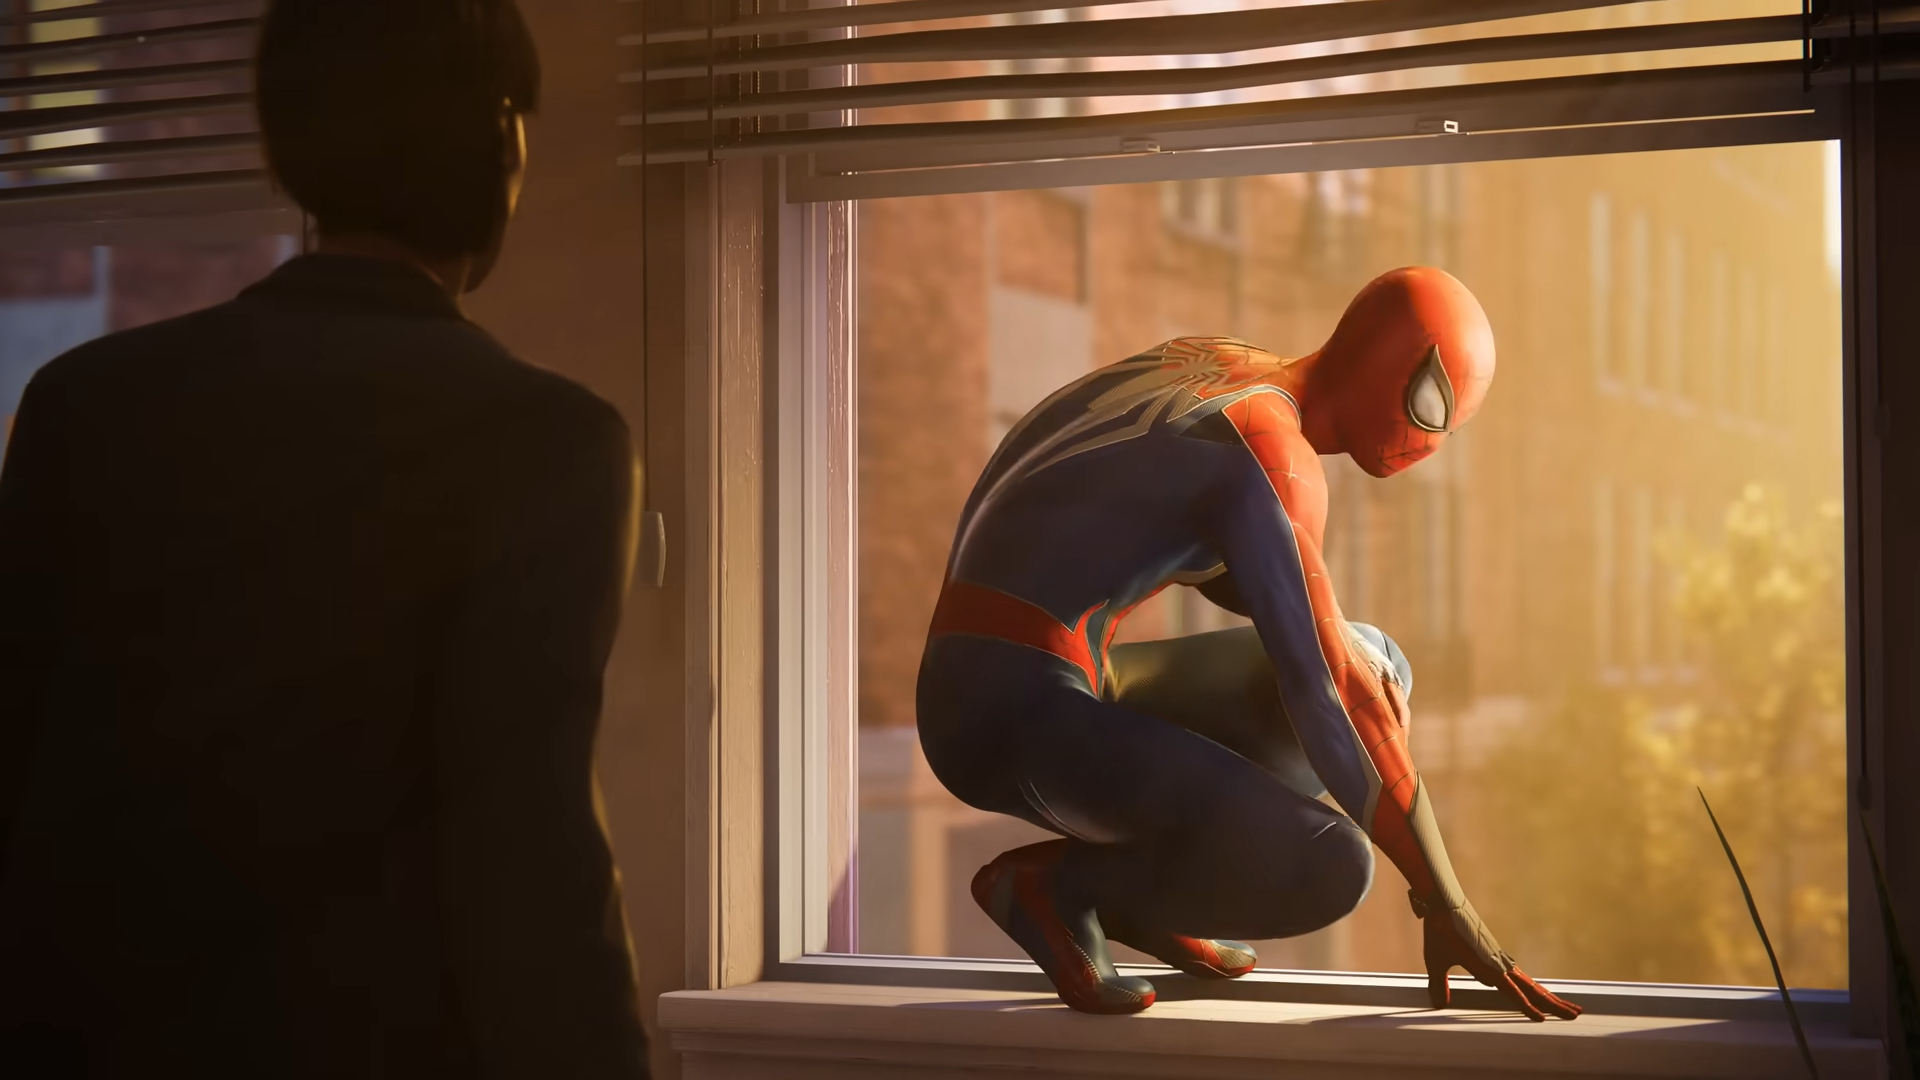 Marvel's Spider-Man 2 HUGE Leak - Gameplay Changes, Story Details